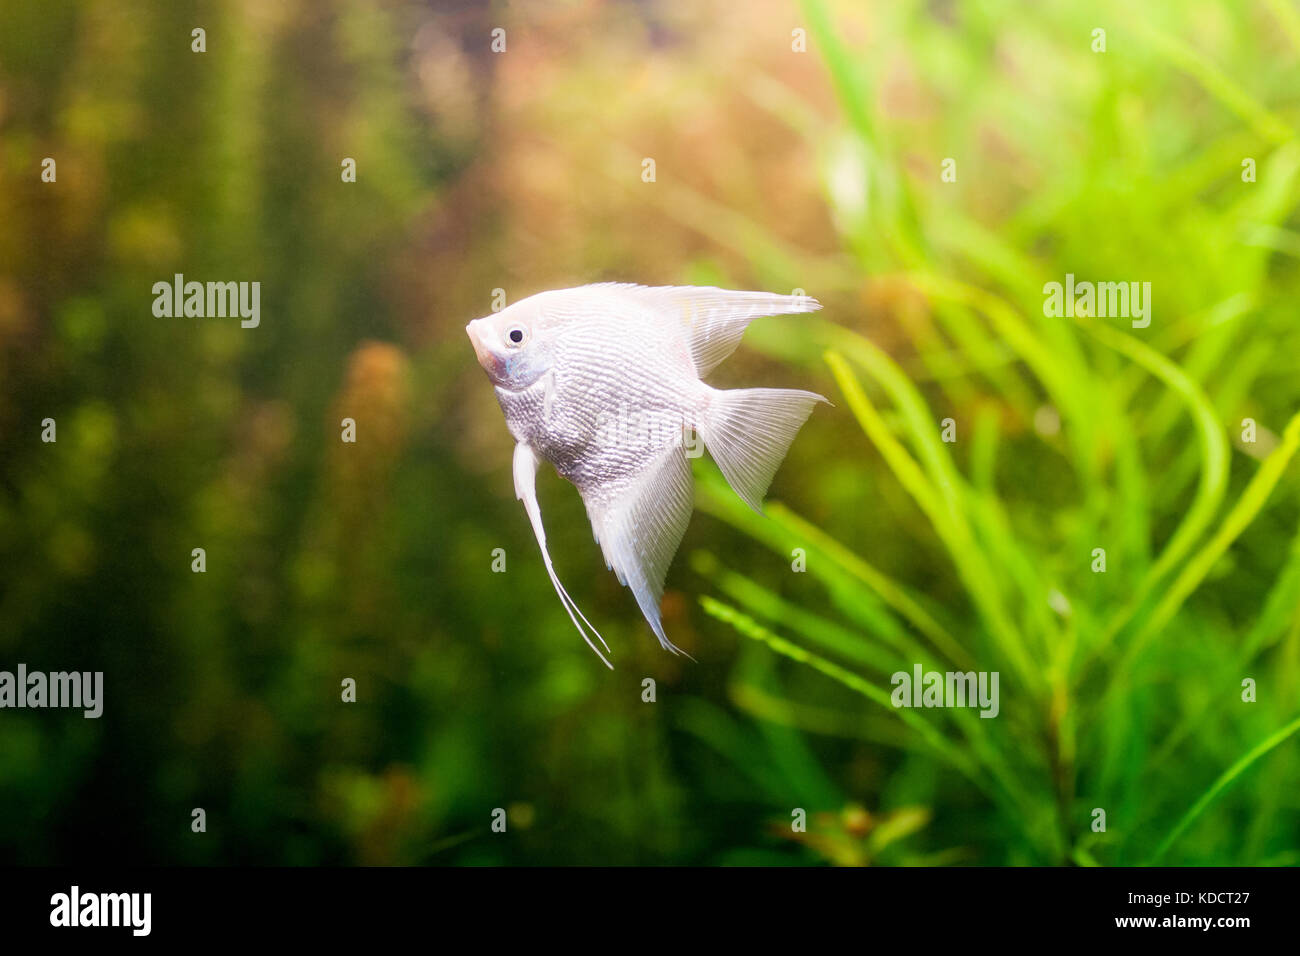 Angelfish scalare swimming underwater in fresh aquarium. Stock Photo